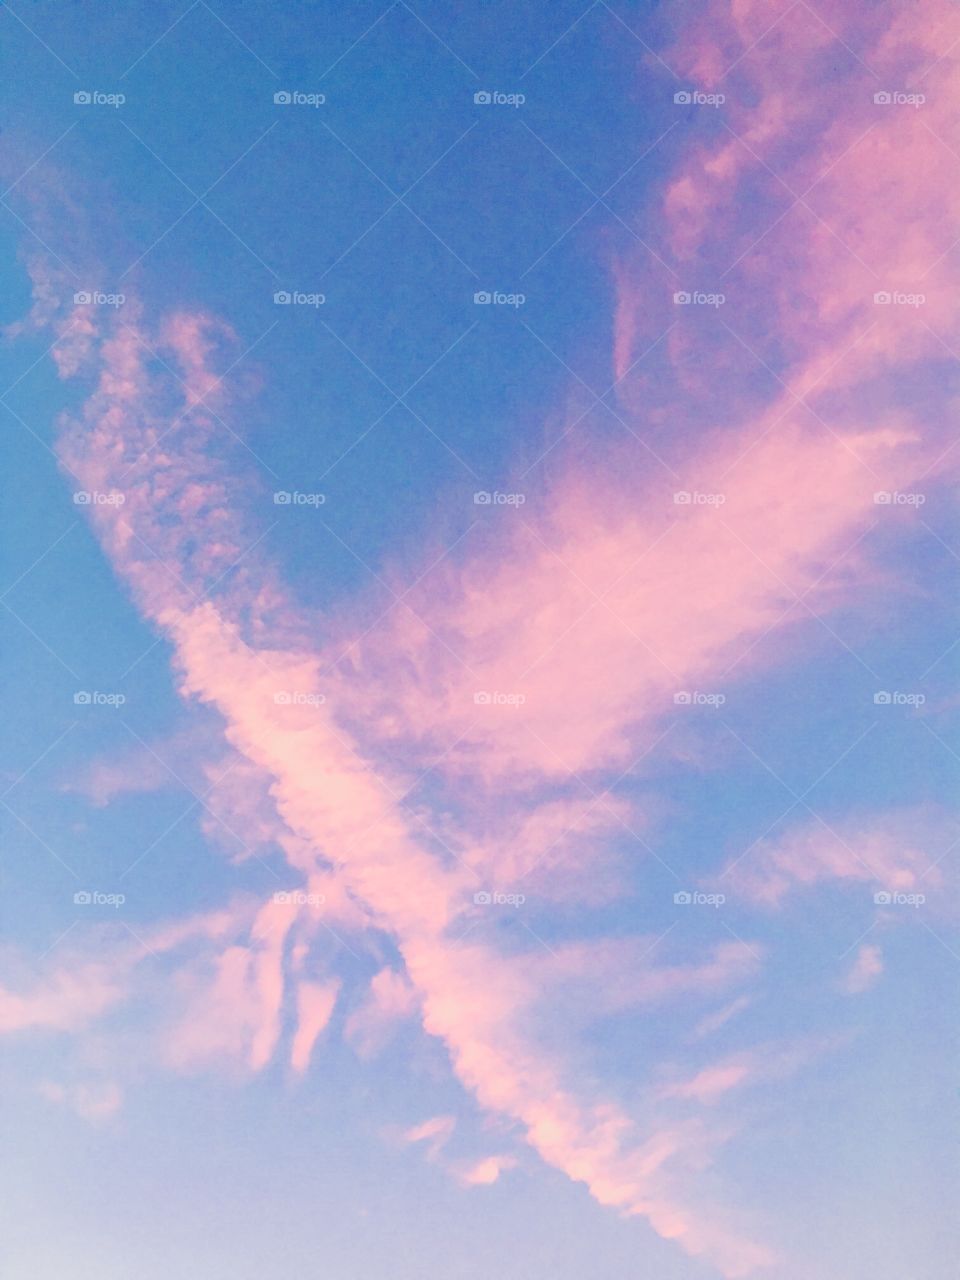 Céu muito bonito com o azul sendo cortado pelas nuvens róseas. Viva a beleza da Natureza!